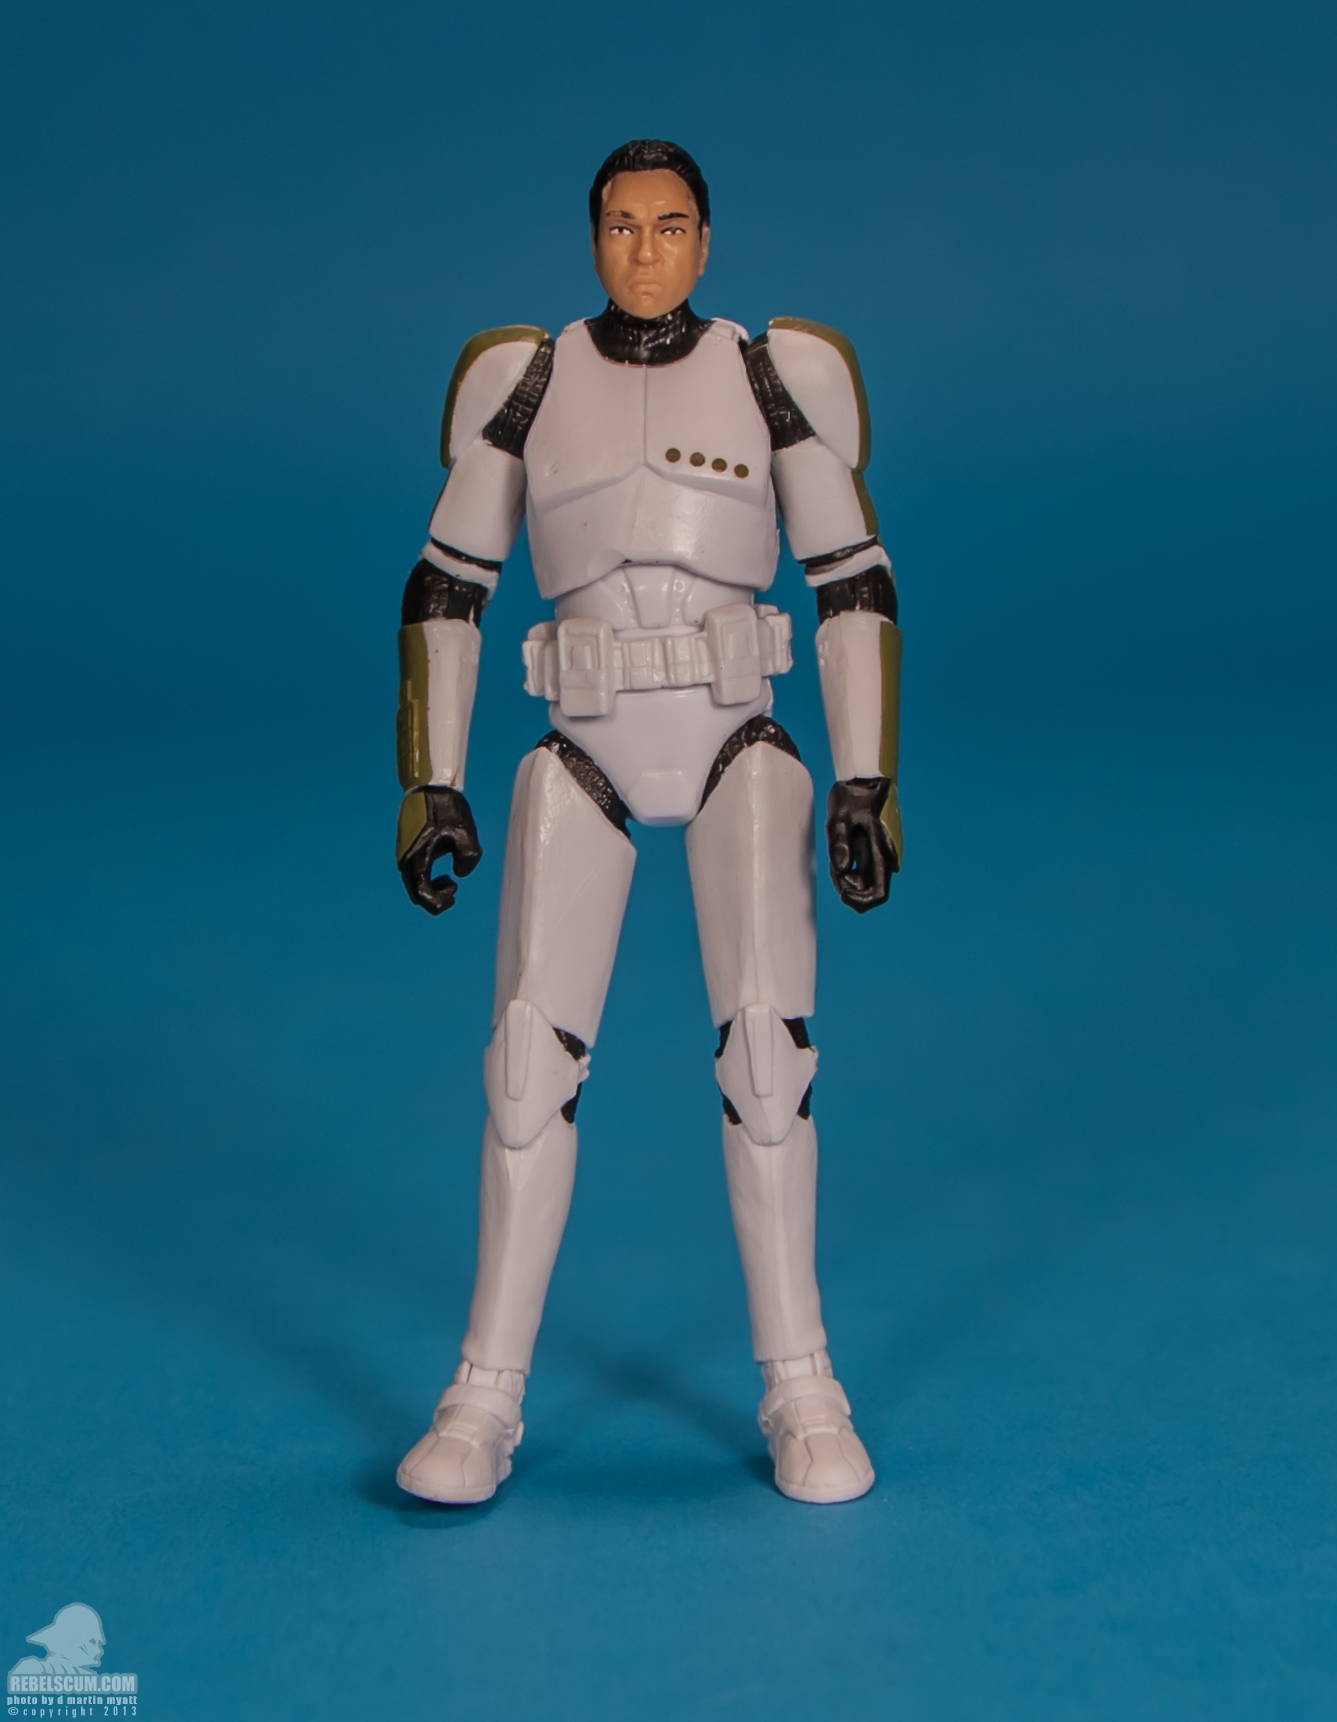 The-Black-Series-Star-Wars-Hasbro-02-Clone-Trooper-Sergeant-005.jpg